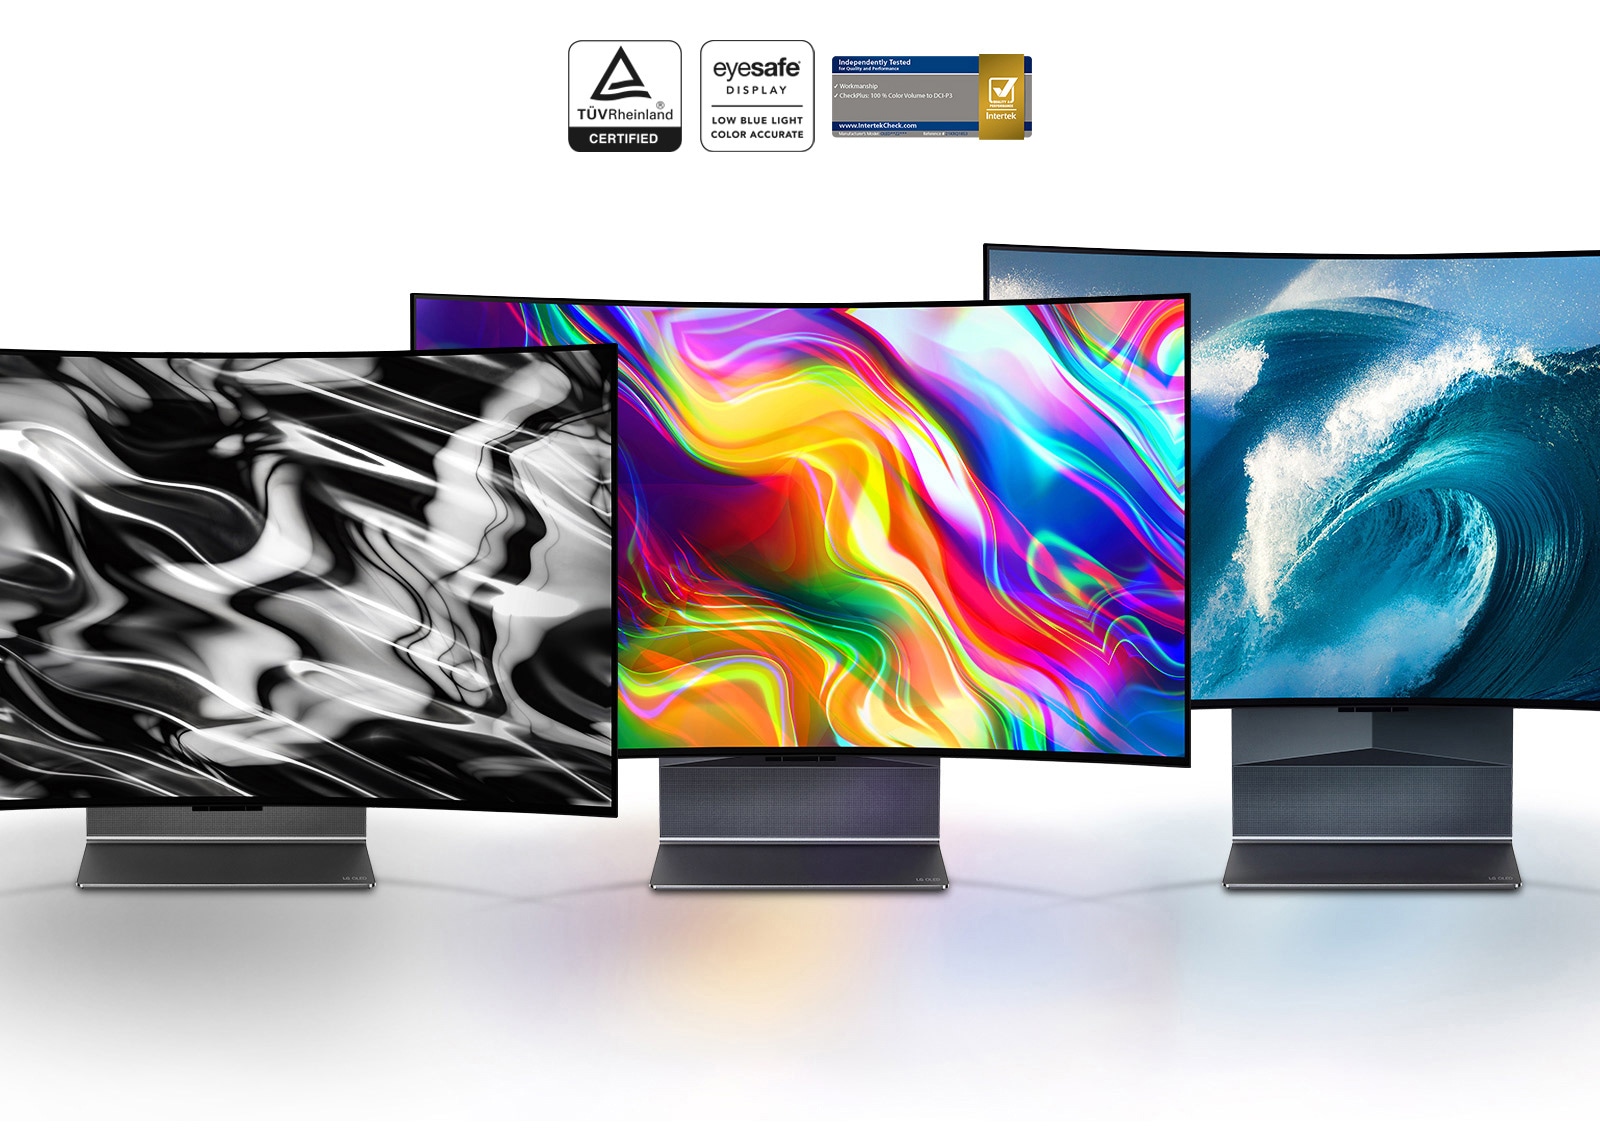 שלוש טלוויזיות LG OLED Flex מוצגות כשהן ניצבות זו לצד זו ובמסכים מוצגות תמונה שחורה בסגנון אבסטרקט, תמונה צבעונית בסגנון אבסטרקט ותמונה של גל כחול.